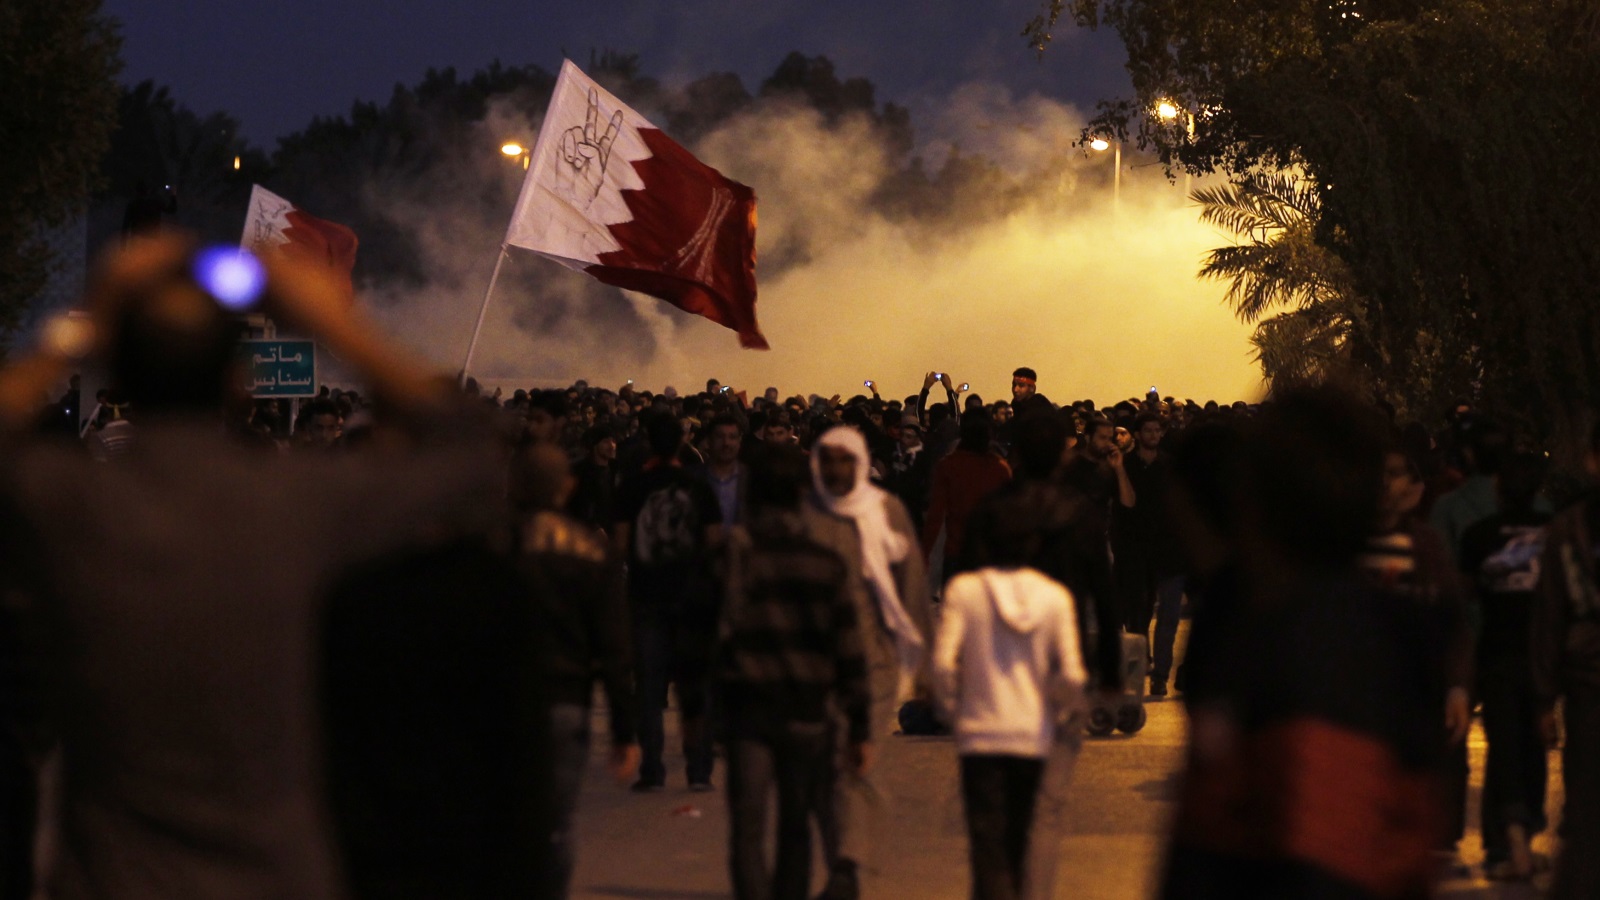 عشرات آلاف المتظاهرين في دوار اللؤلؤة، أحد أهم ساحات المنامة (رويترز)